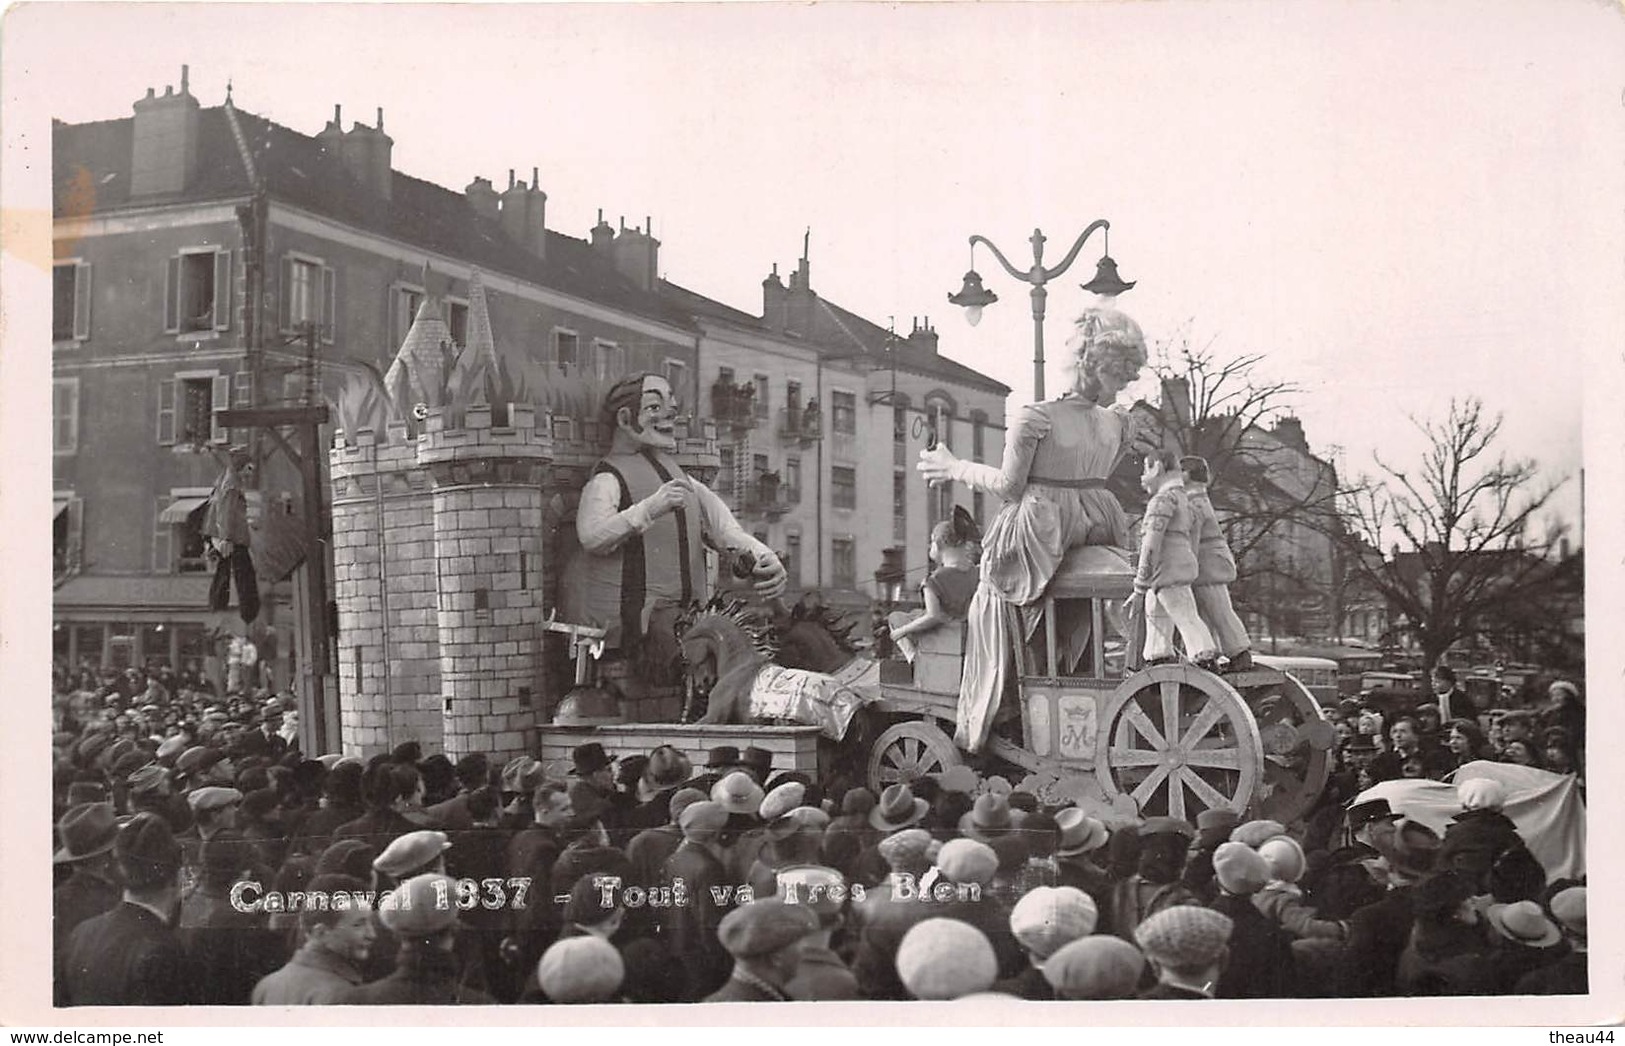 ¤¤   -   CHALON-sur-SAÔNE  -   Carte-Photo Du Carnaval 1937  -  Char  -  Tout Va Très Bien  -   ¤¤ - Chalon Sur Saone